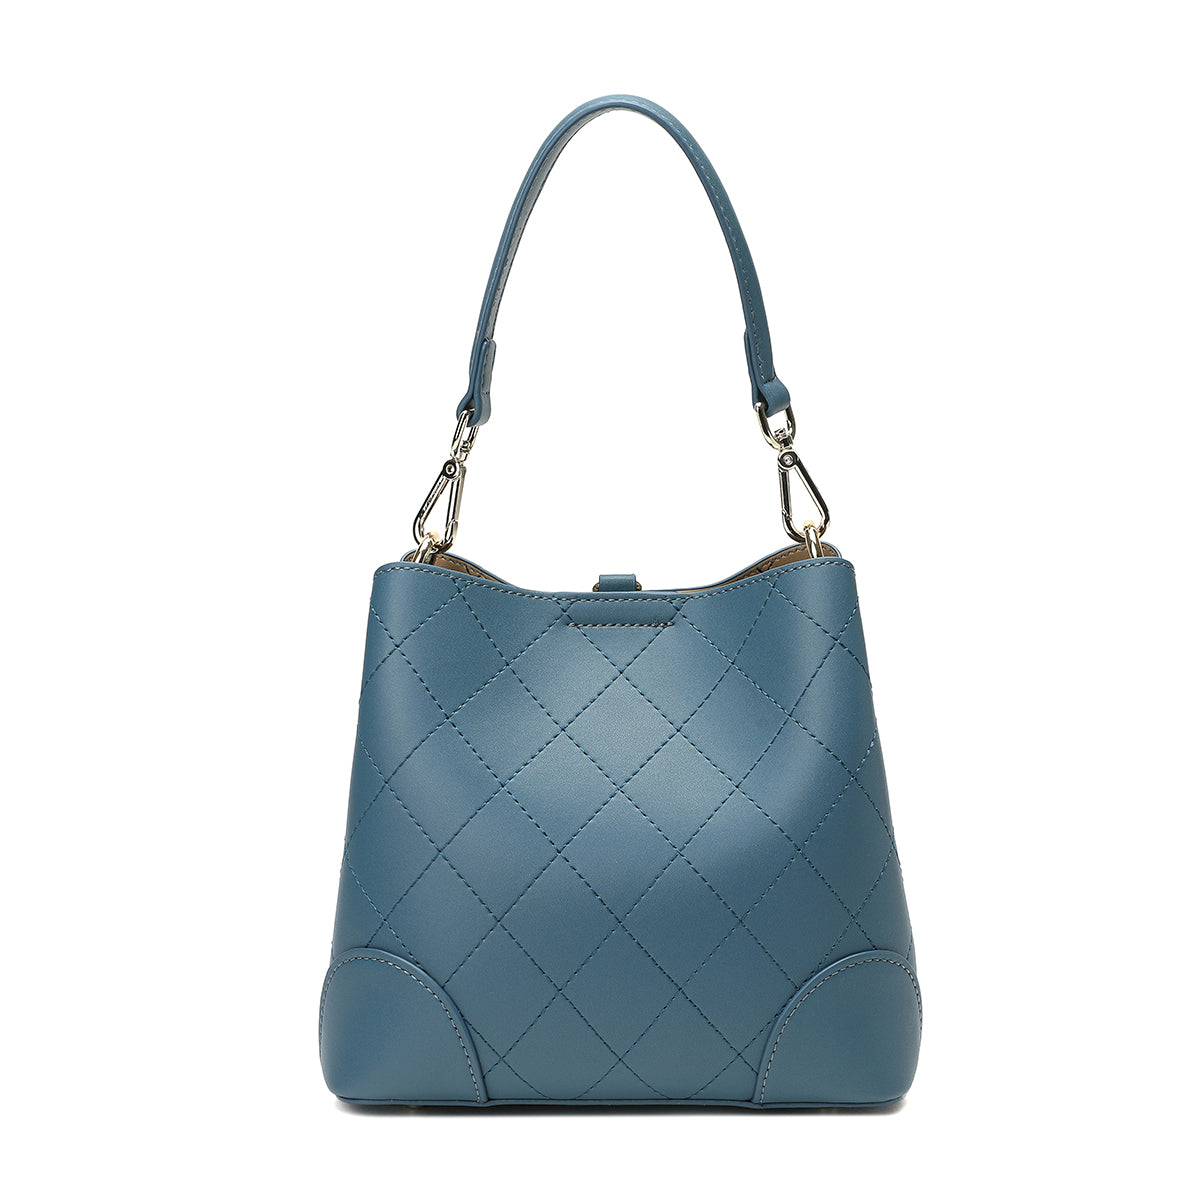 حقيبة يد نسائية فاخرة من ساغا بتصميم ماسي باللون الأزرق